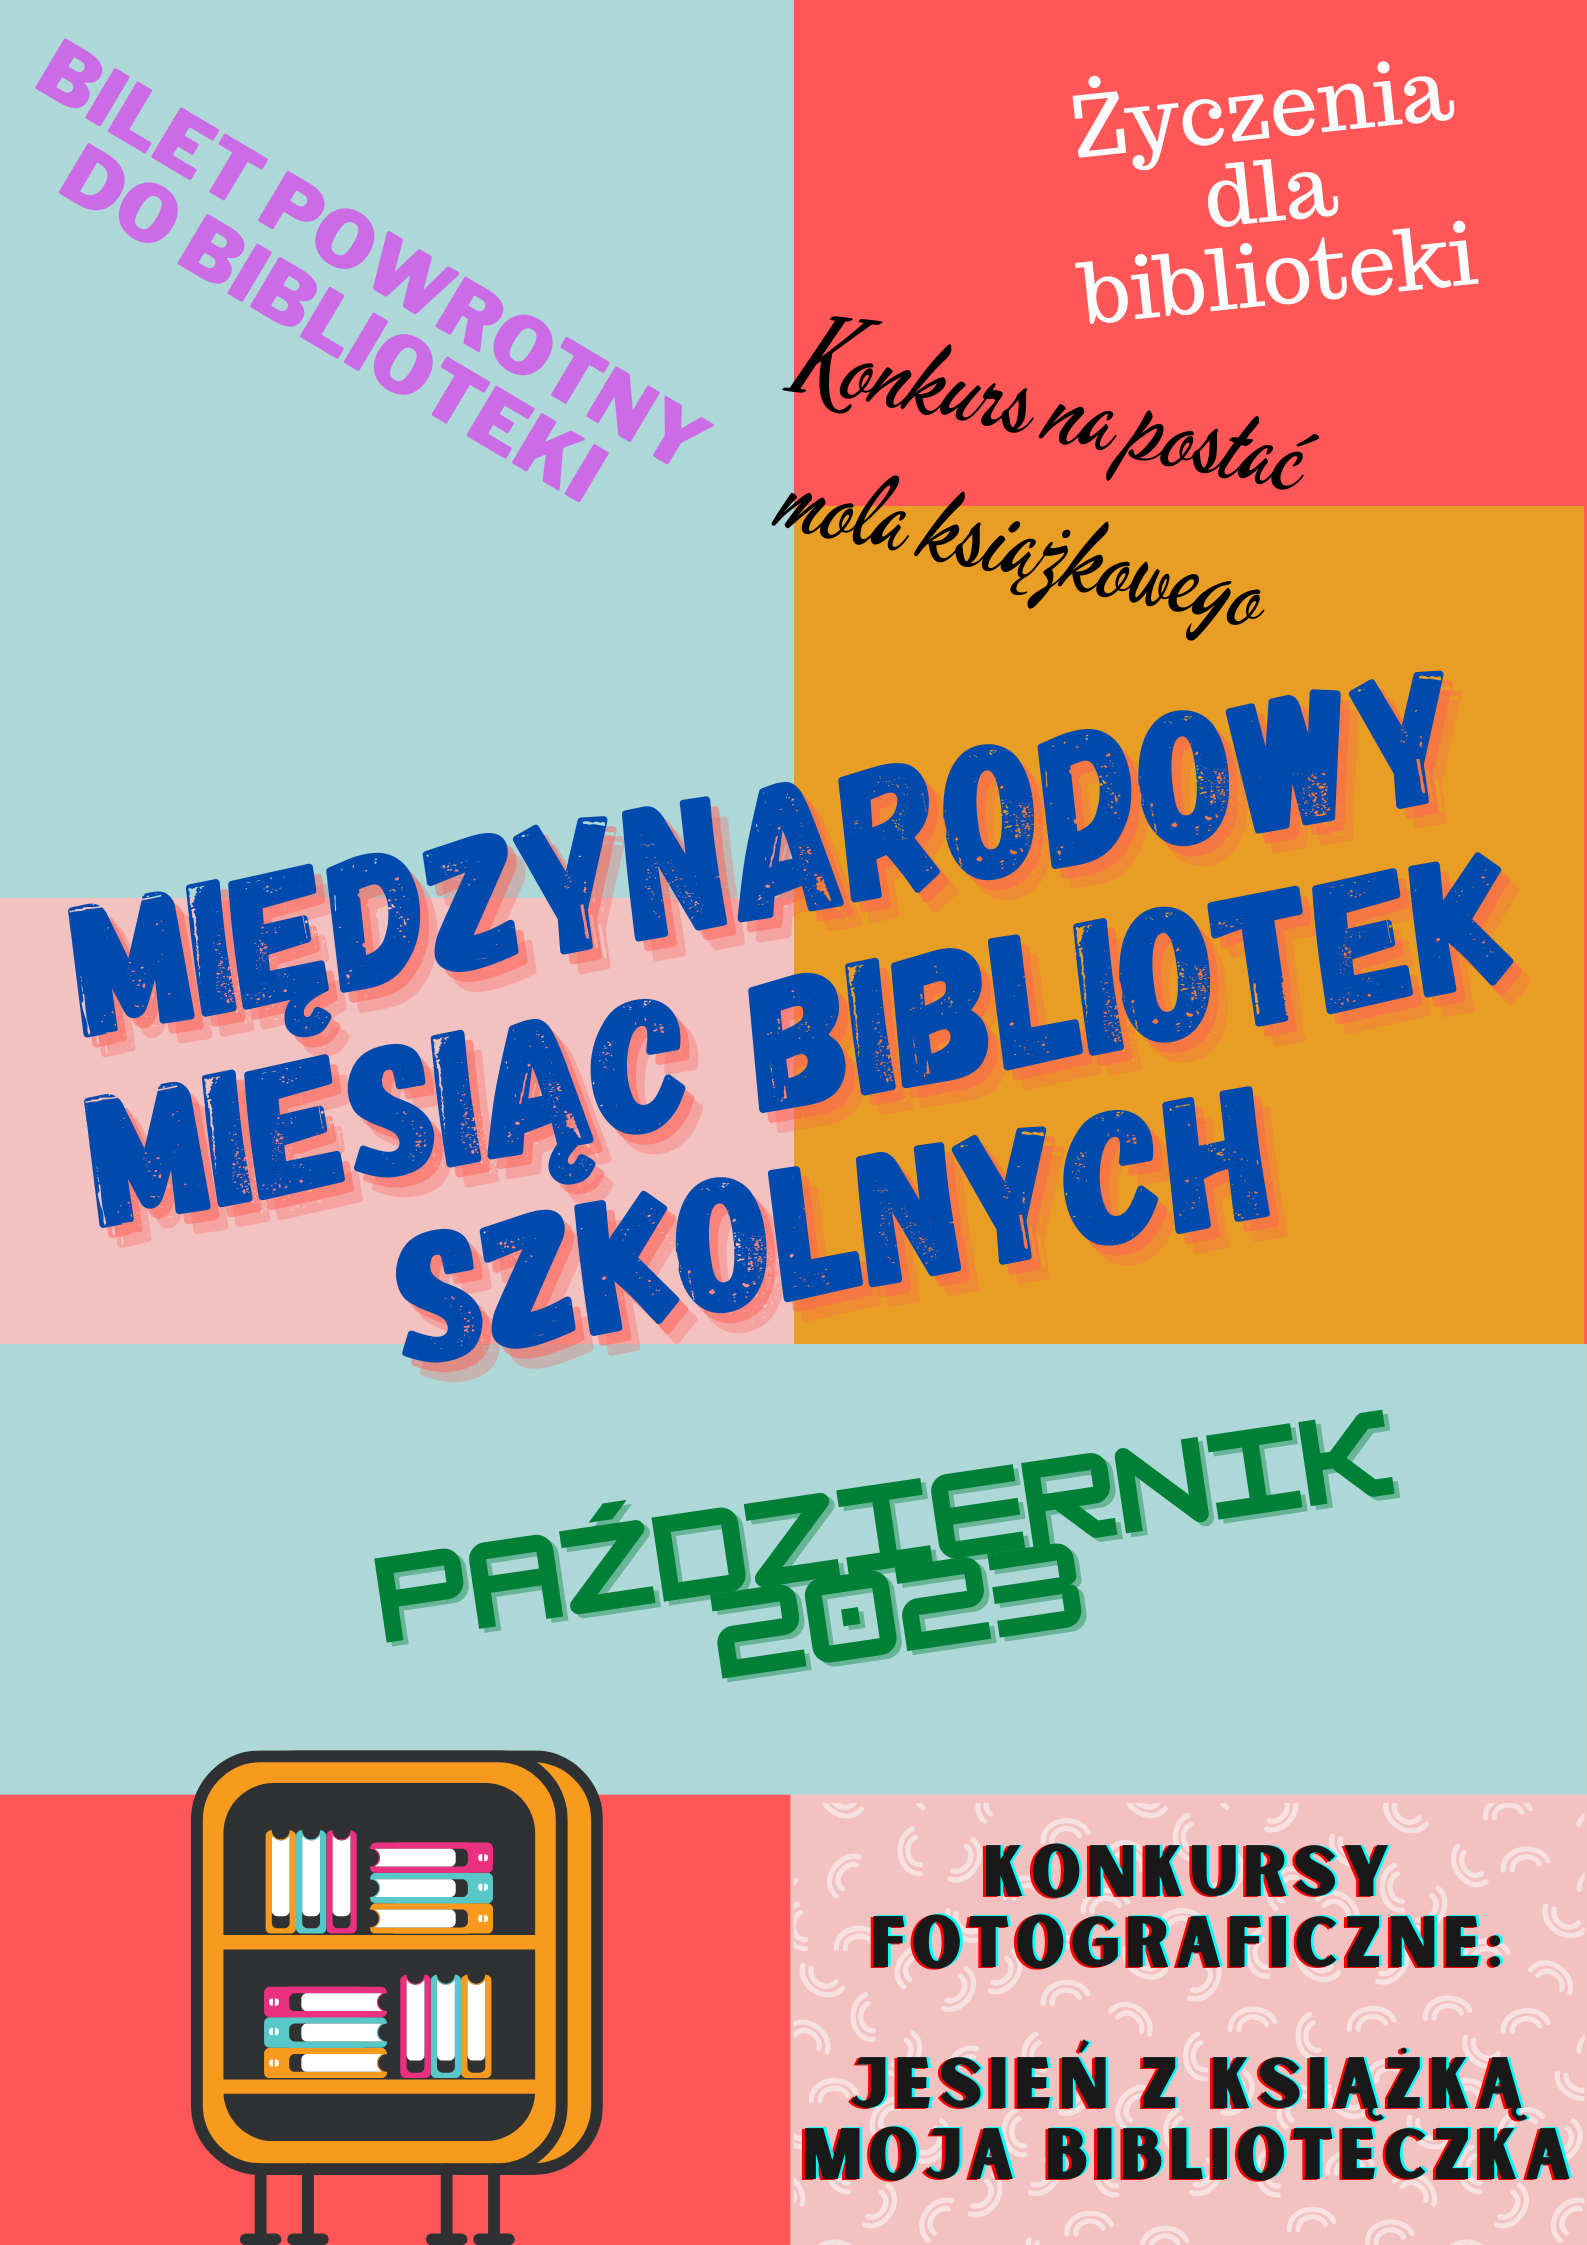 plakat promujący Międzynarodowy Miesiąc Bibliotek Szkolnych